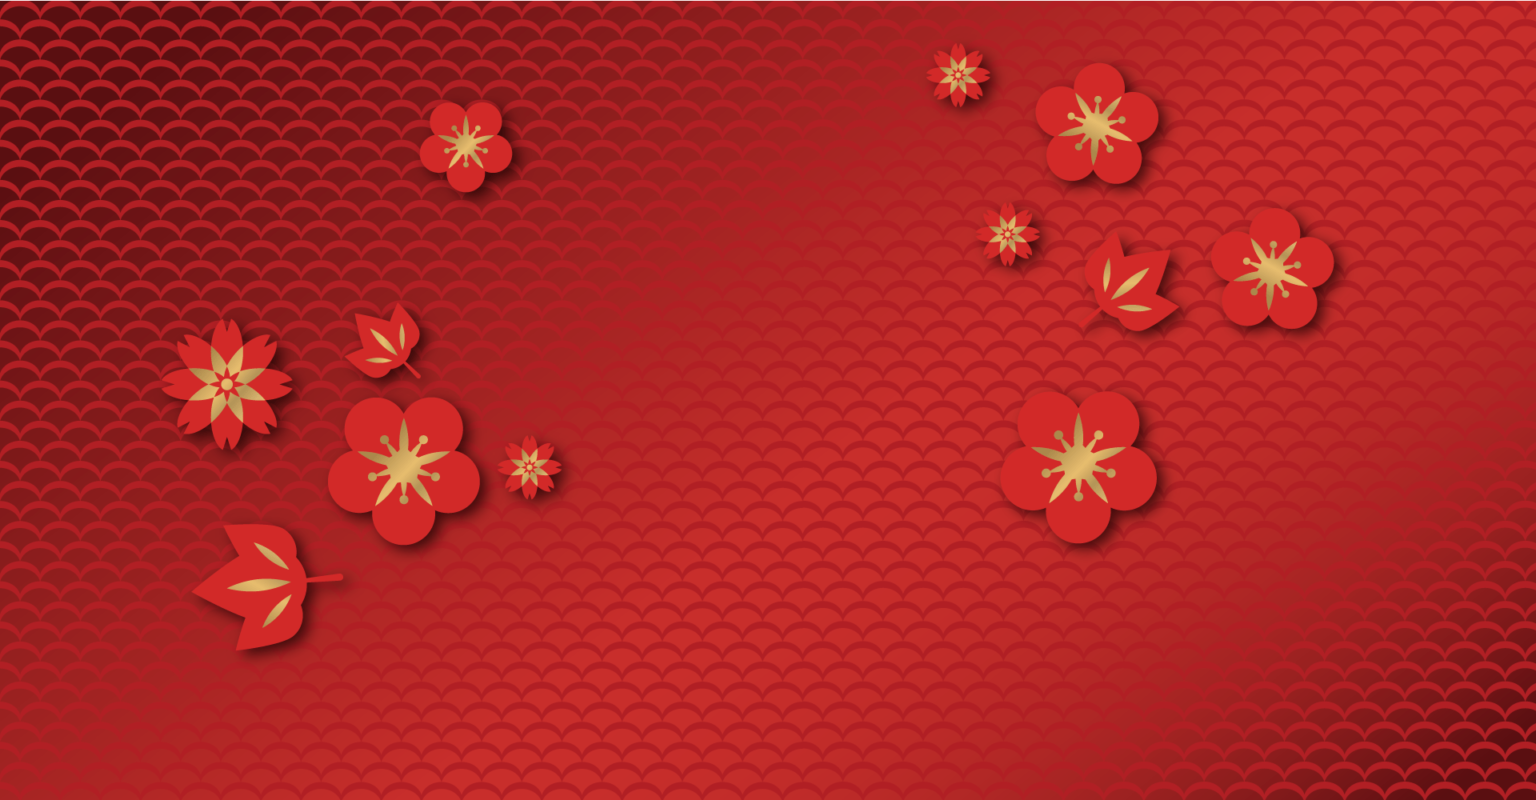 Trang trí cho dịp Tết Tân Sửu với những mẫu background tết đẹp tỉ mỉ và đầy ý nghĩa. Những bức ảnh về truyền thống Tết Nguyên Đán kết hợp với lời chúc mừng năm mới sẽ truyền tải đầy đủ thông điệp yêu thương và ấm áp.